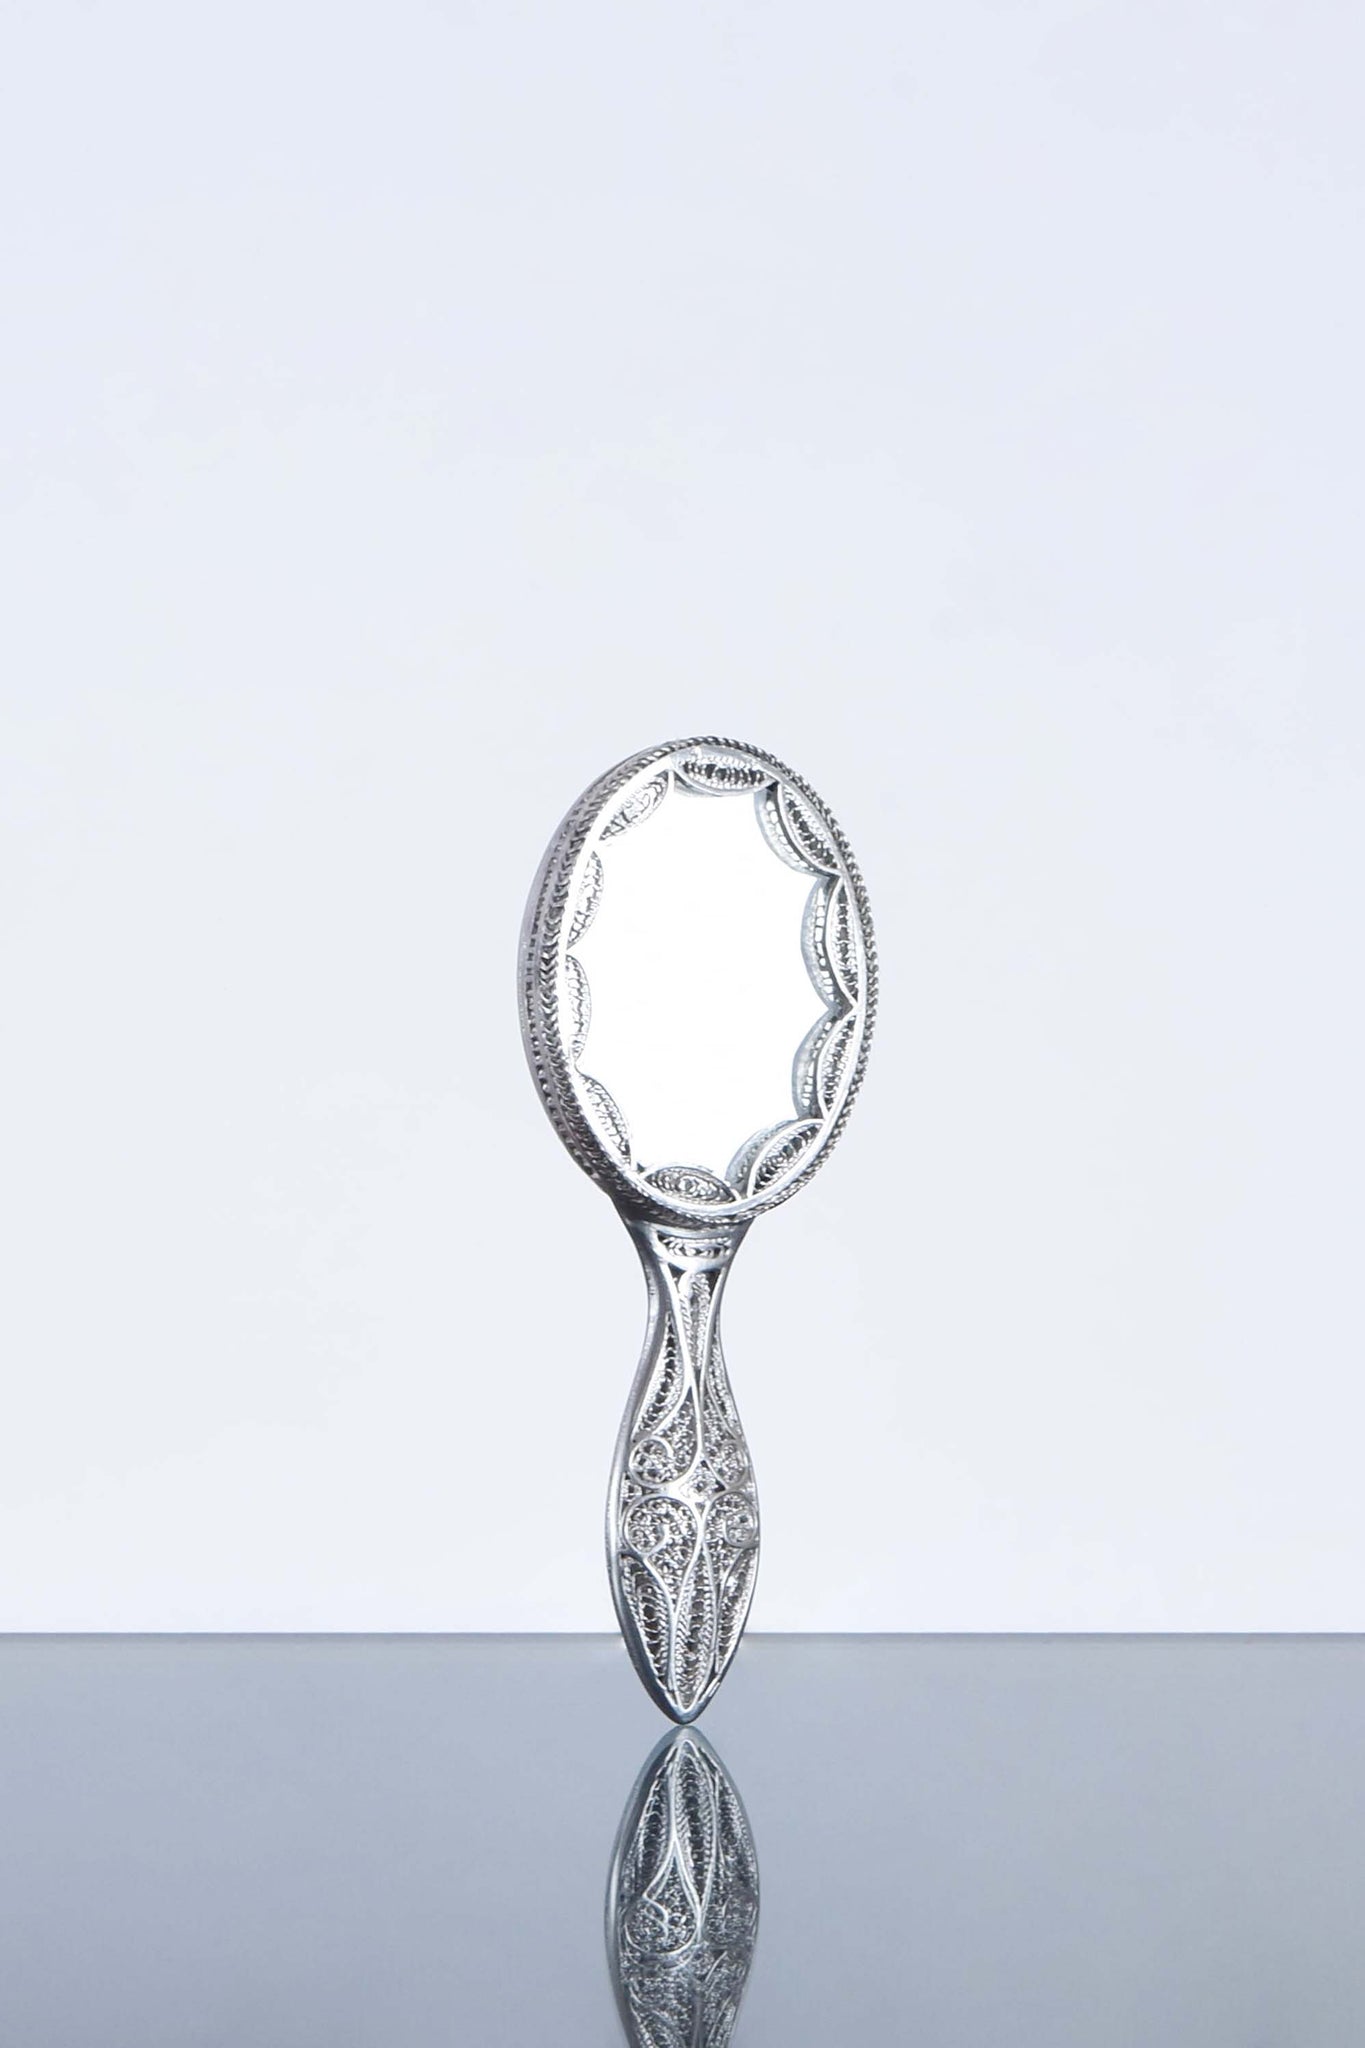 Filigreed Silver Hand Mirror, Pocket Mirror